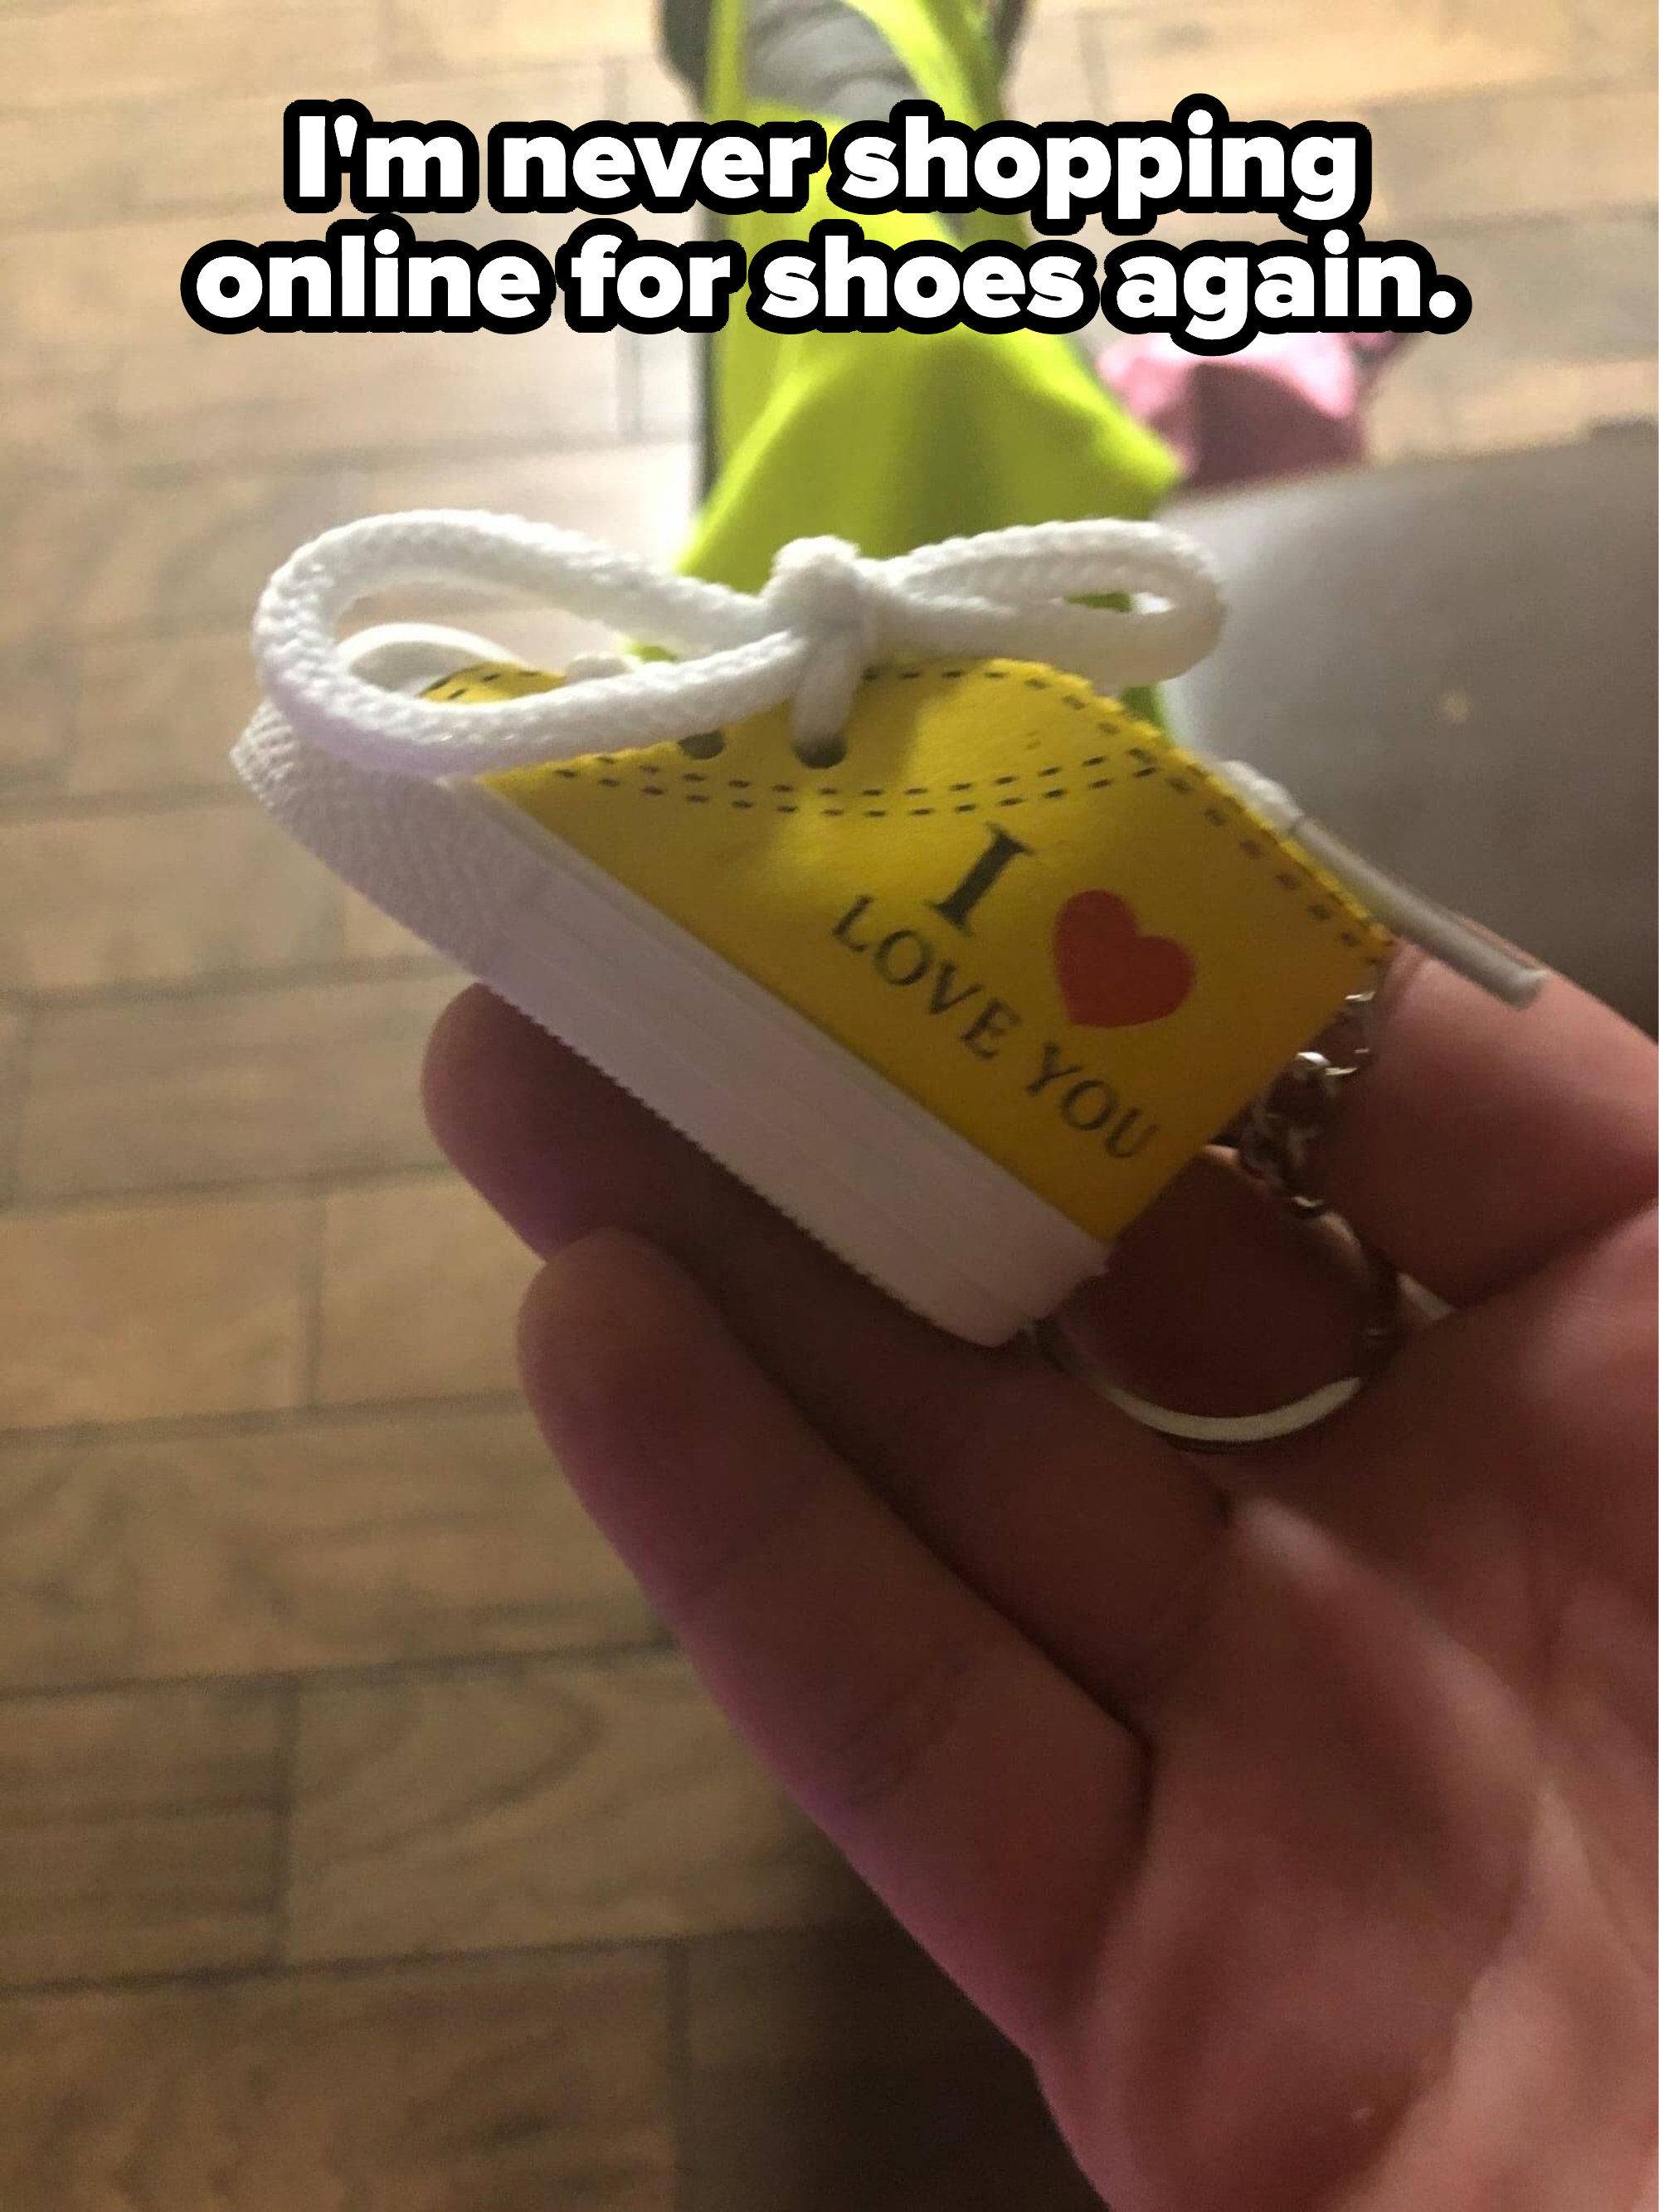 A tiny shoe